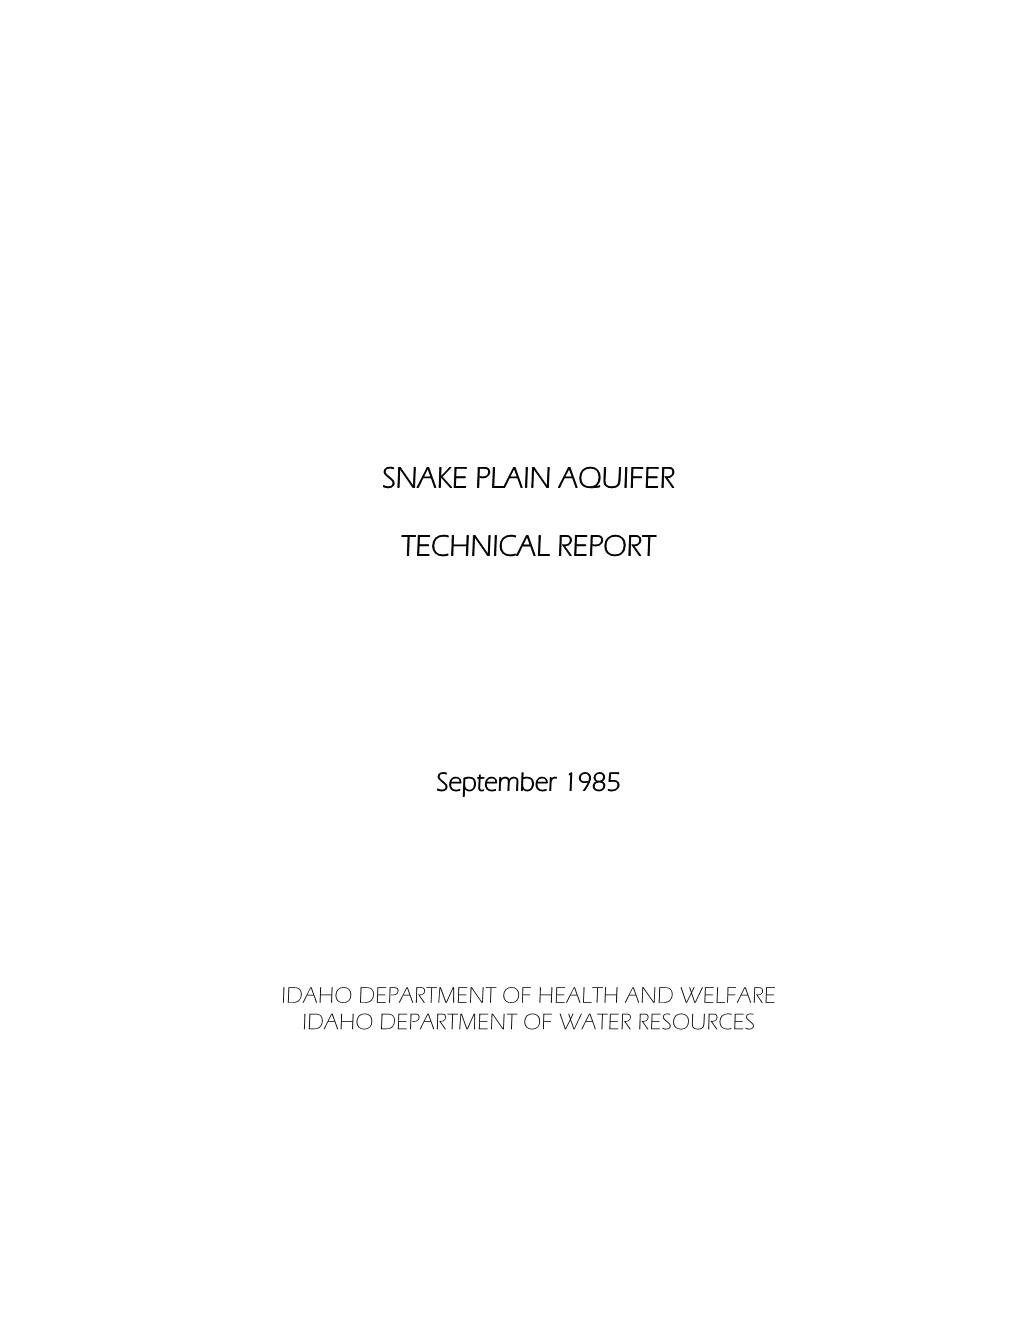 Snake Plain Aquifer Technical Report